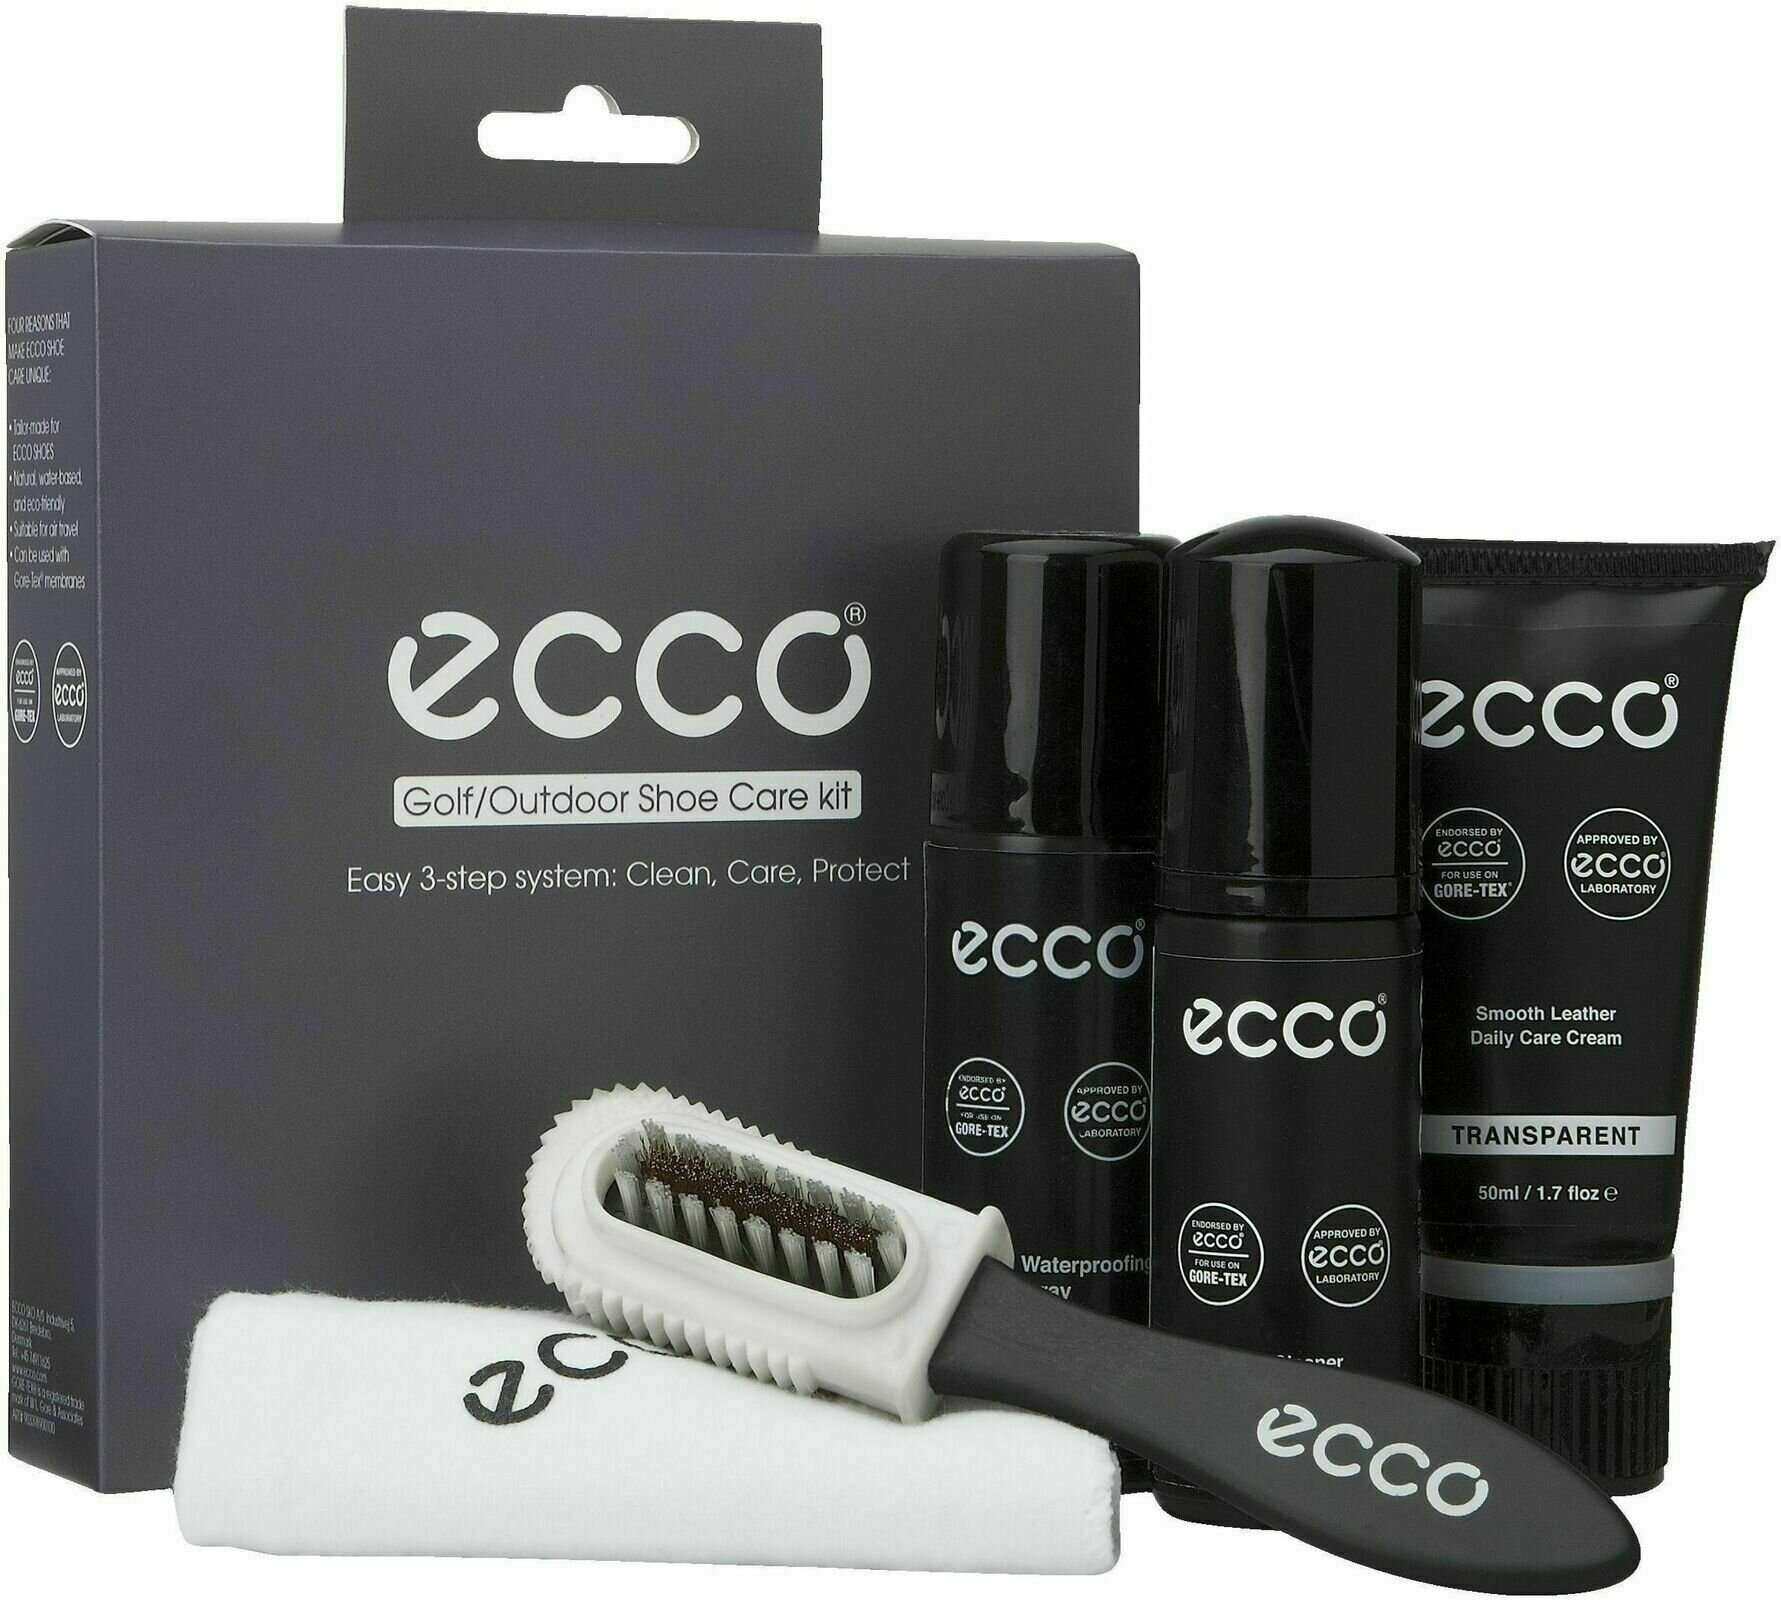 Mantenimiento del calzado Ecco Shoe Care Kit Mantenimiento del calzado